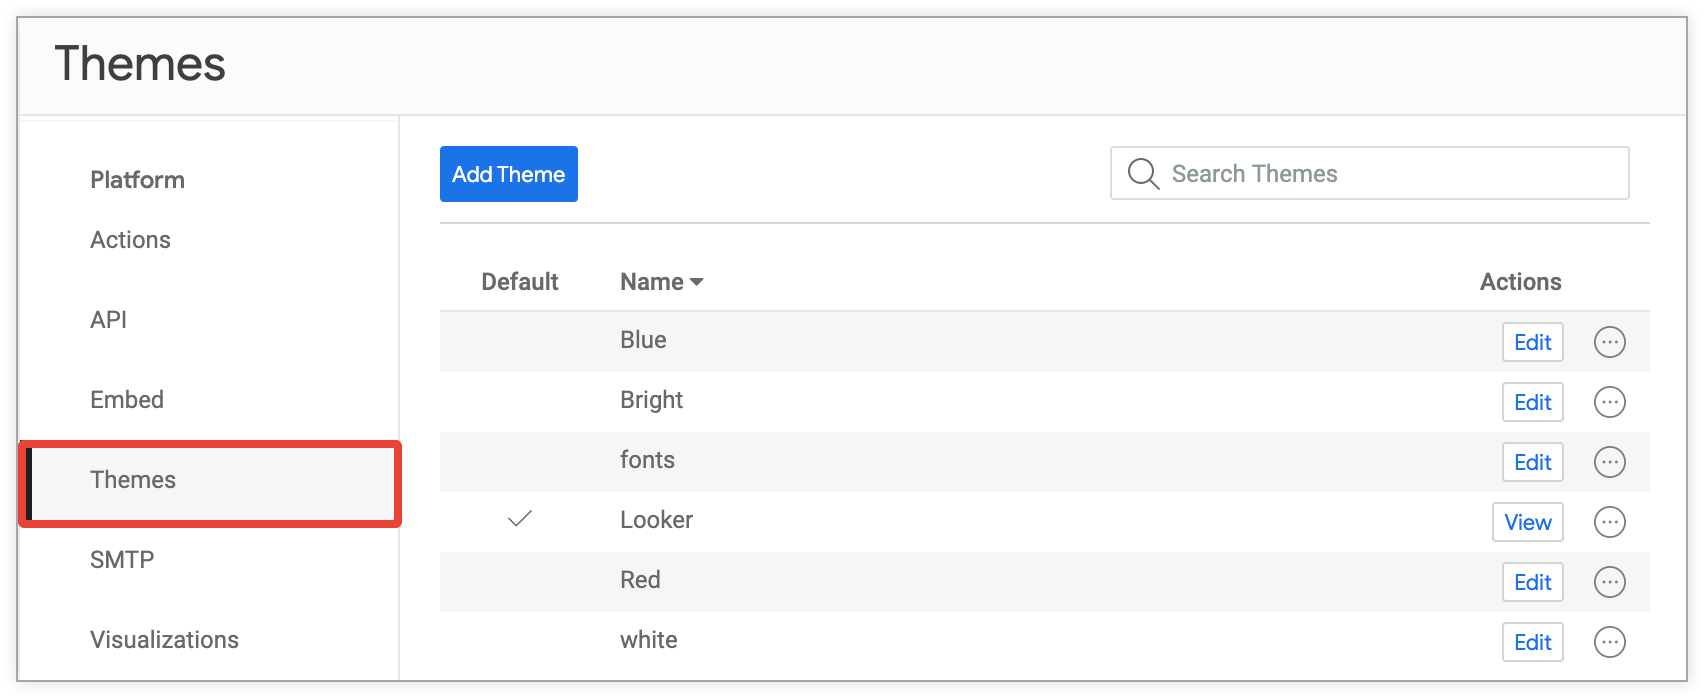 Admin settings - Themes | Looker | Google Cloud